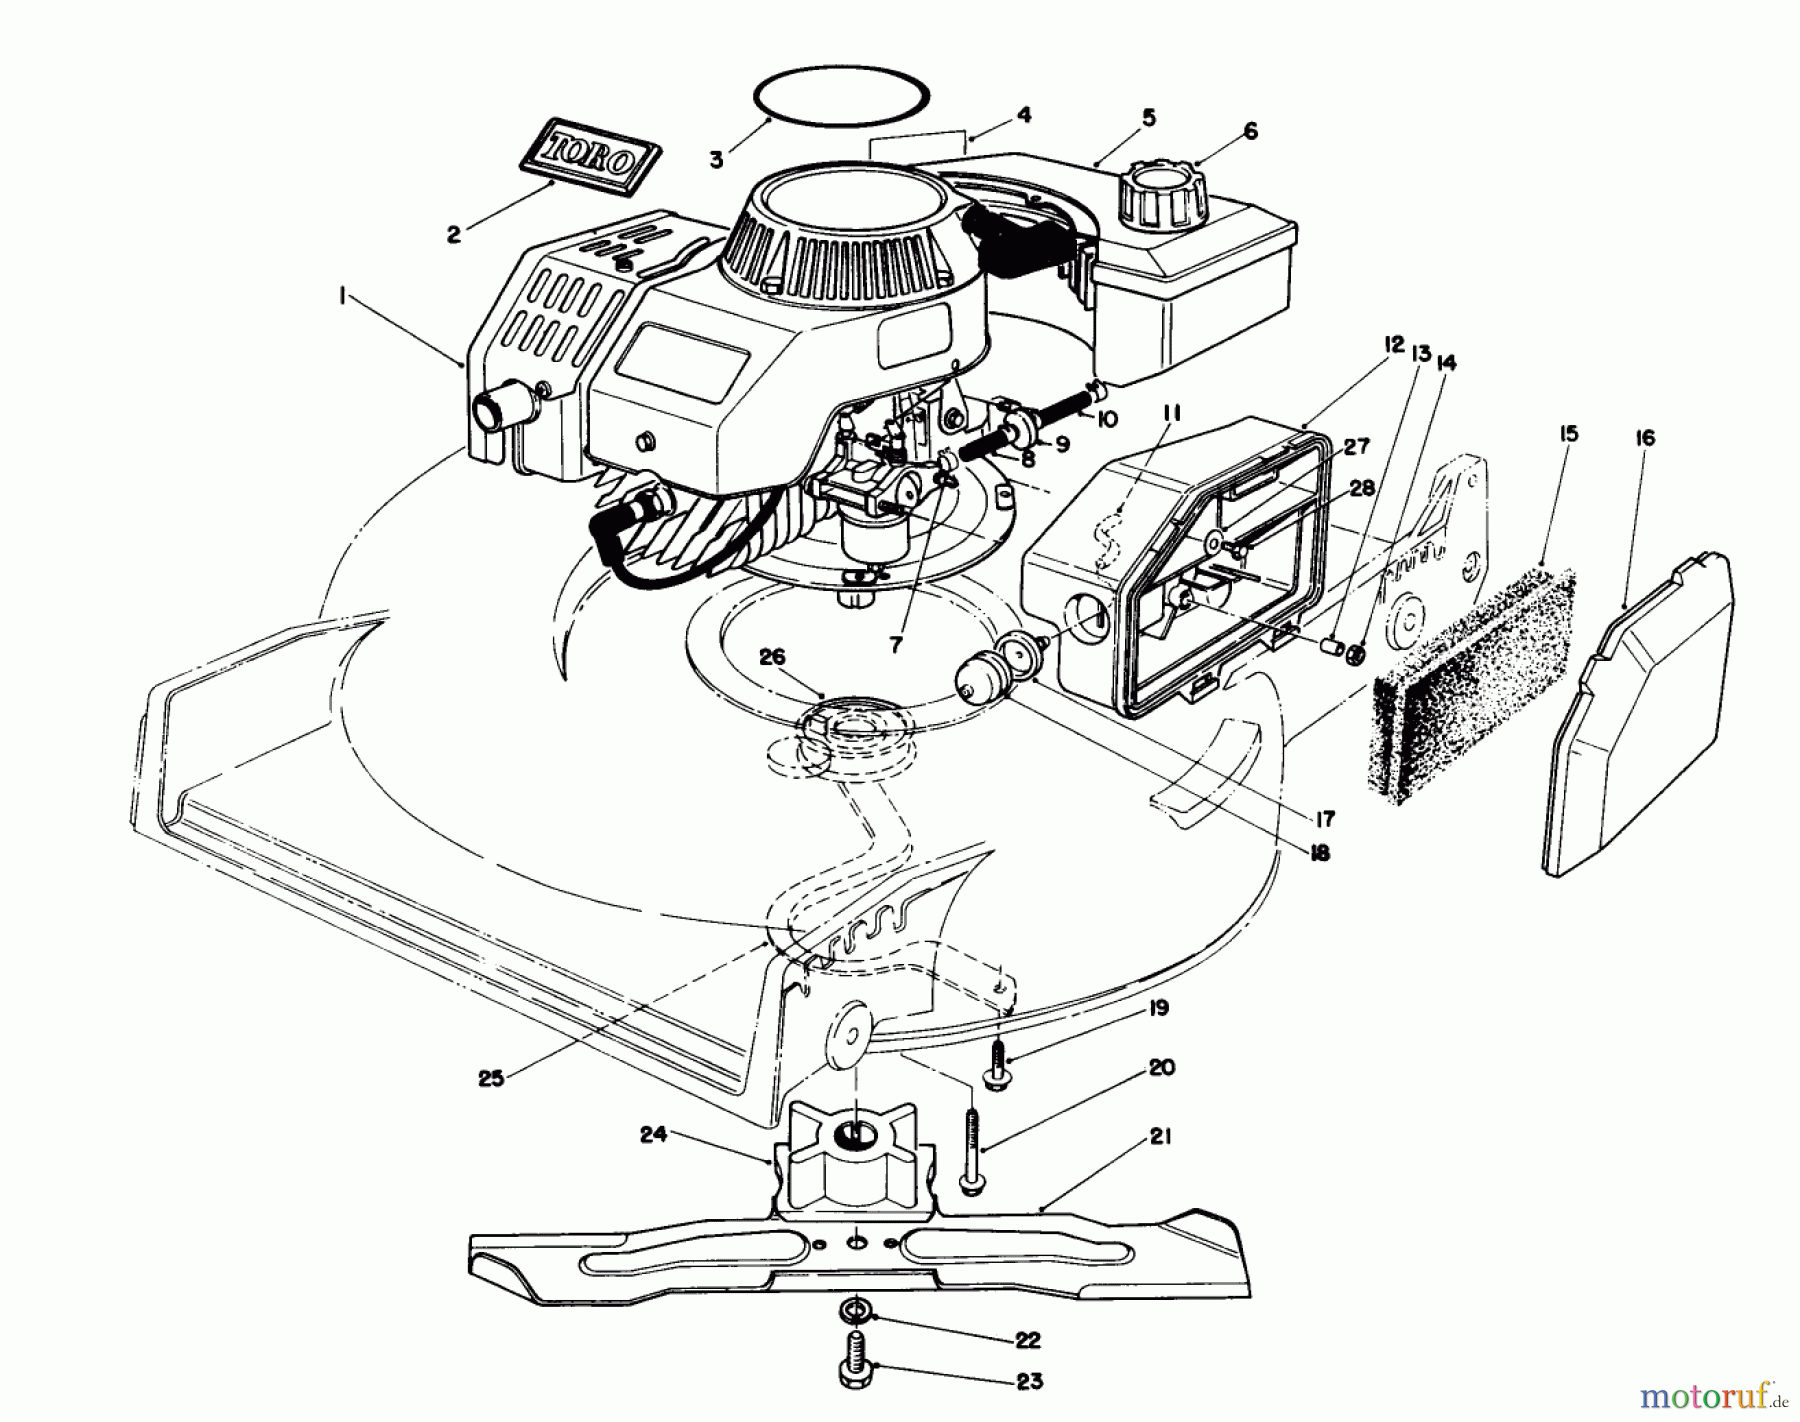  Toro Neu Mowers, Walk-Behind Seite 1 20747C - Toro Lawnmower, 1988 (8000001-8999999) ENGINE ASSEMBLY (MODEL NO. 47PG7)